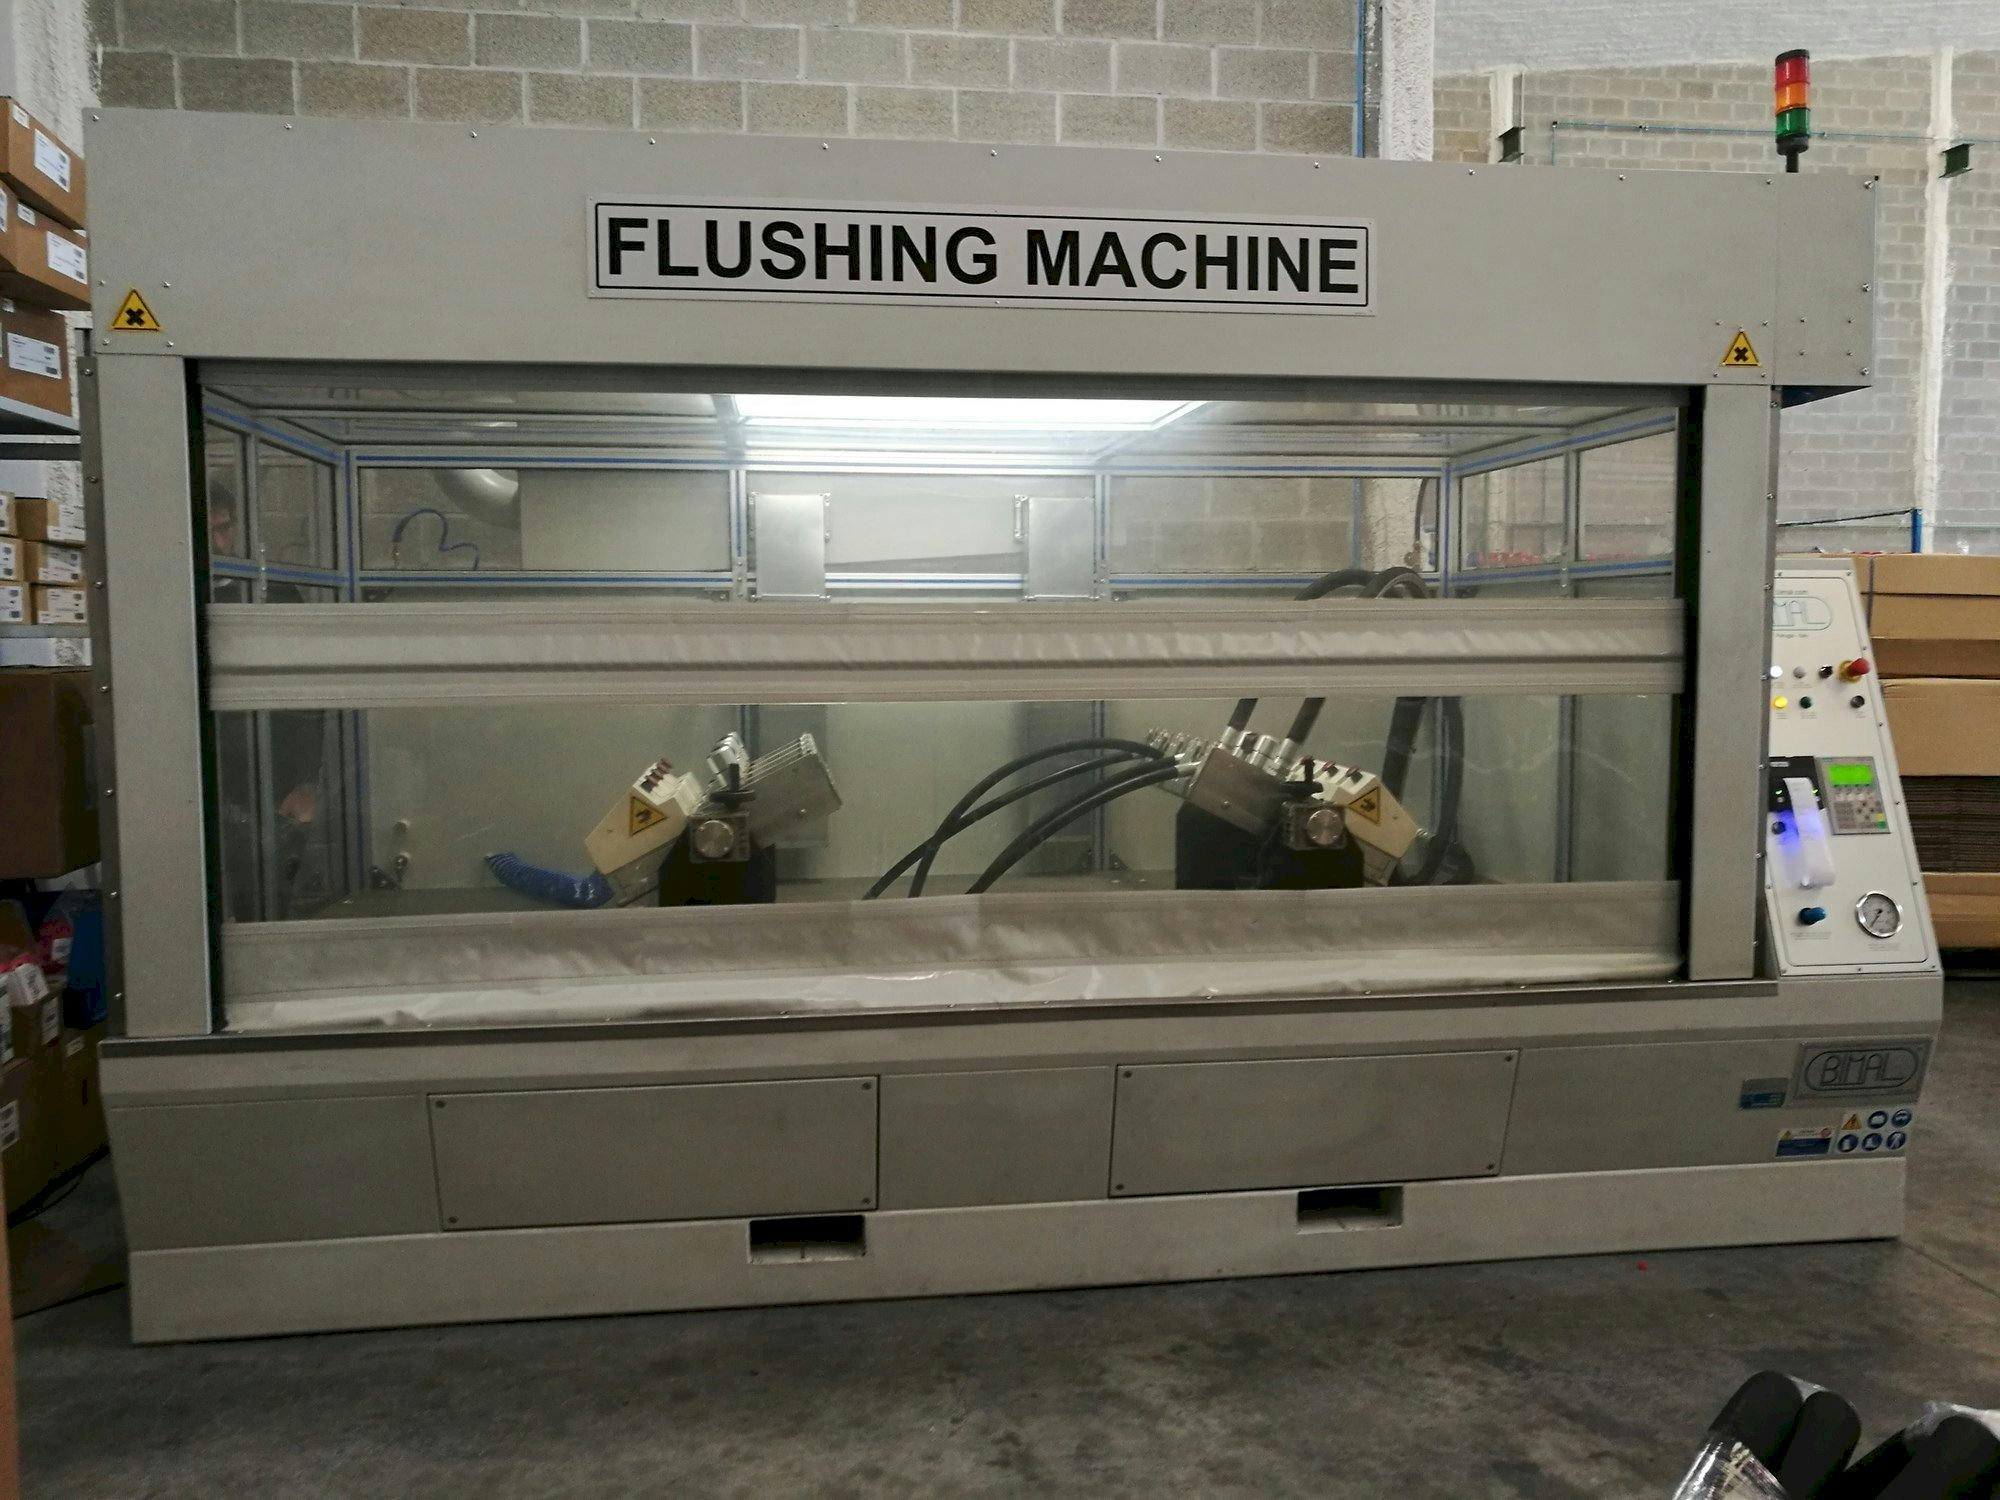 Frontansicht der BIMAL Flush 4  Maschine